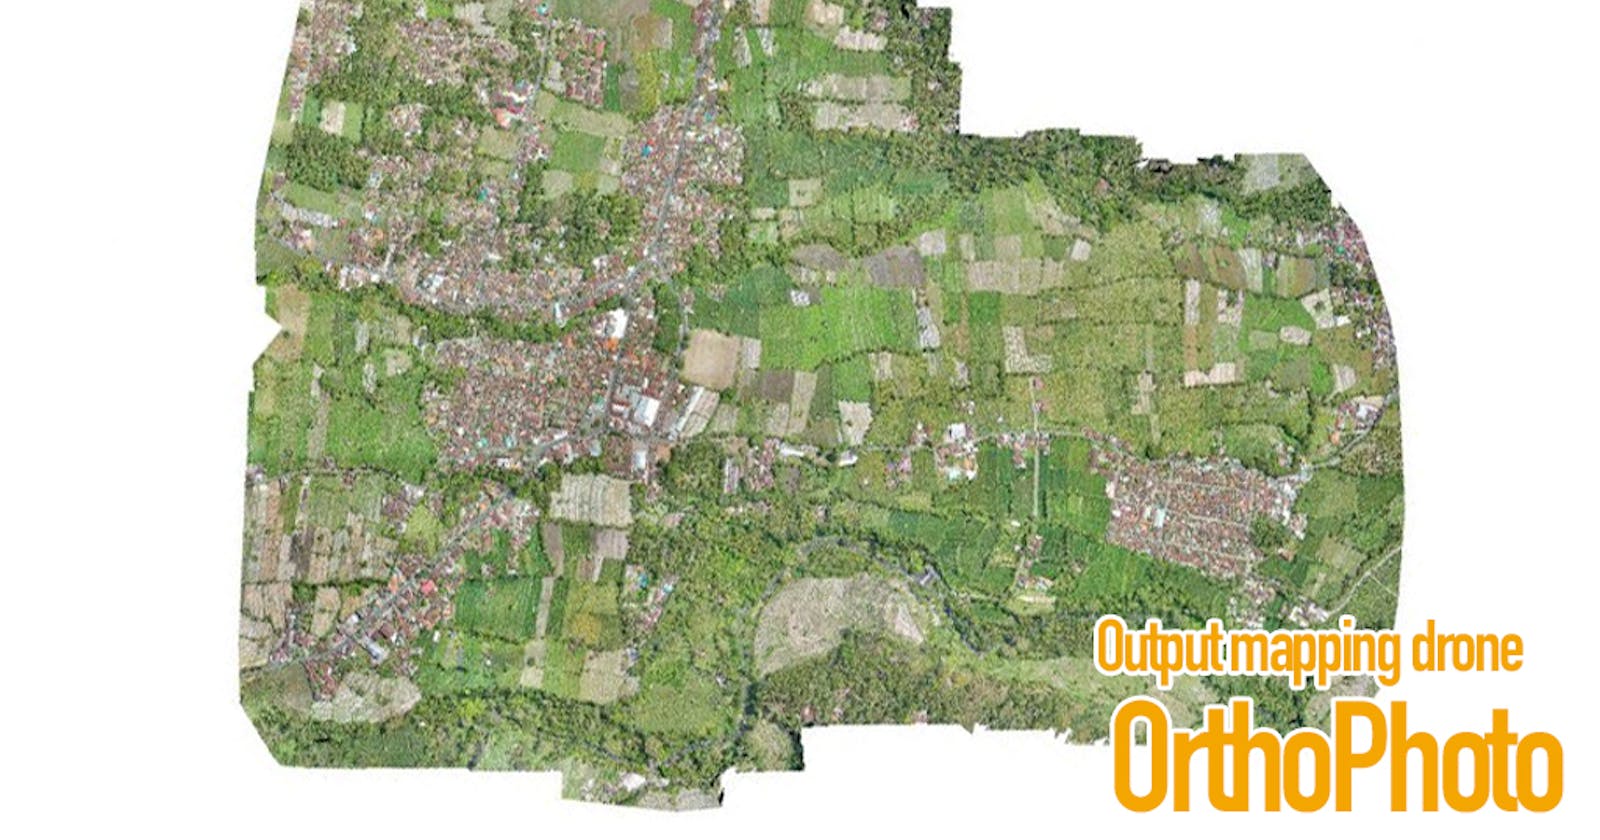 Layanan Pemetaan Drone di Rote Ndao, Inilah Reviewnya